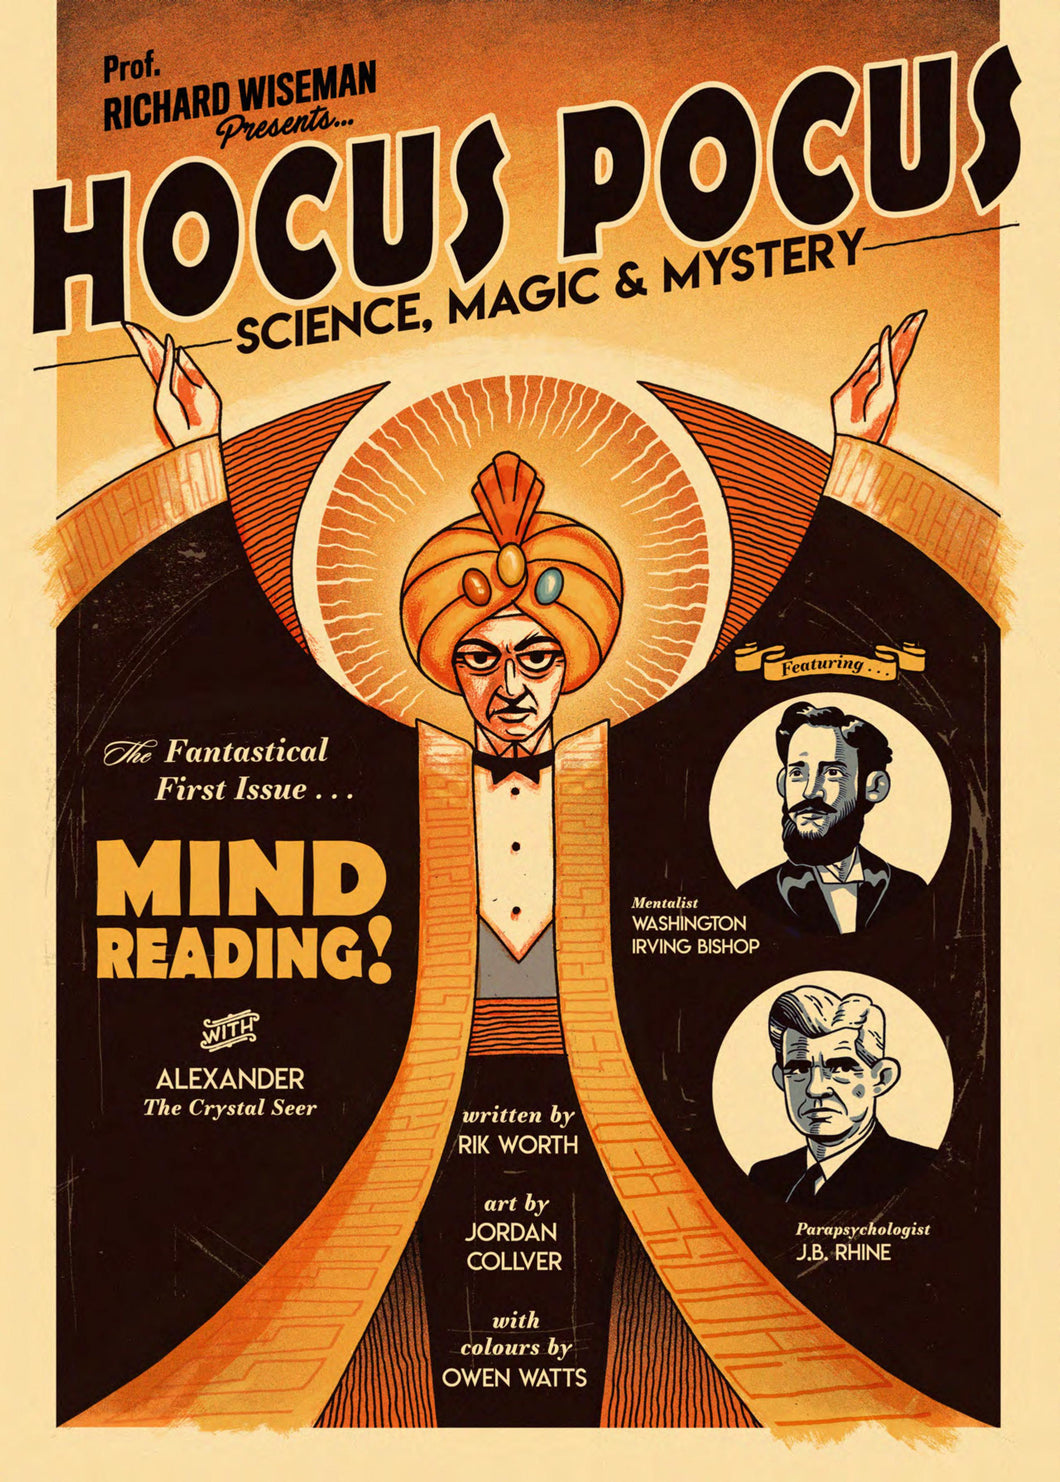 Hocus Pocus: Science Magic & Mystery